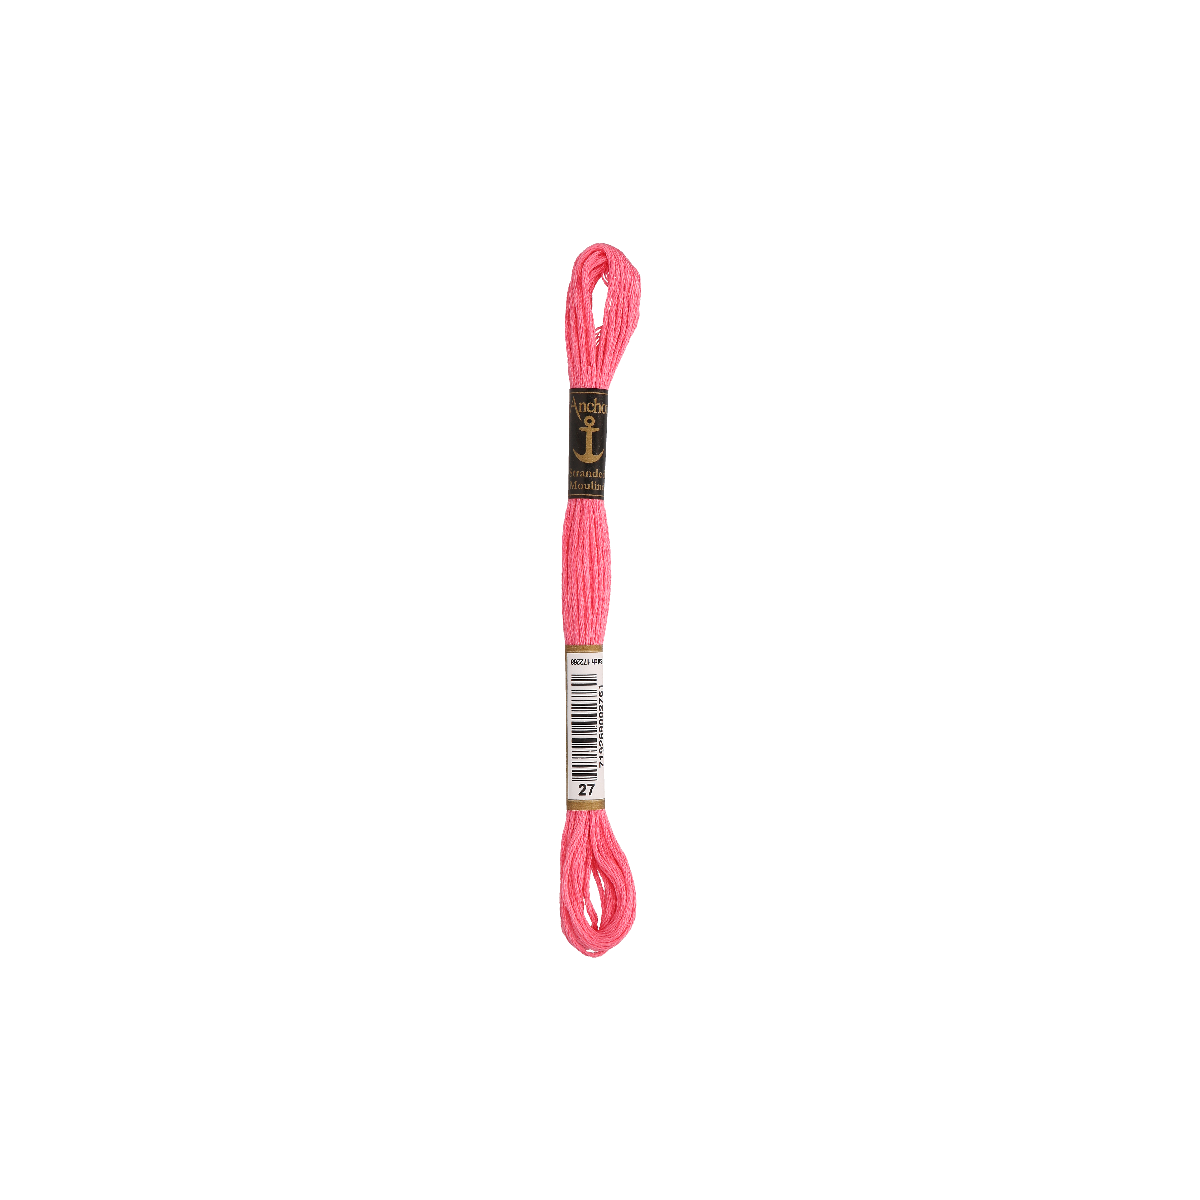 Anchor Sticktwist 8m, rosa, cotone, colore 27, 6 fili